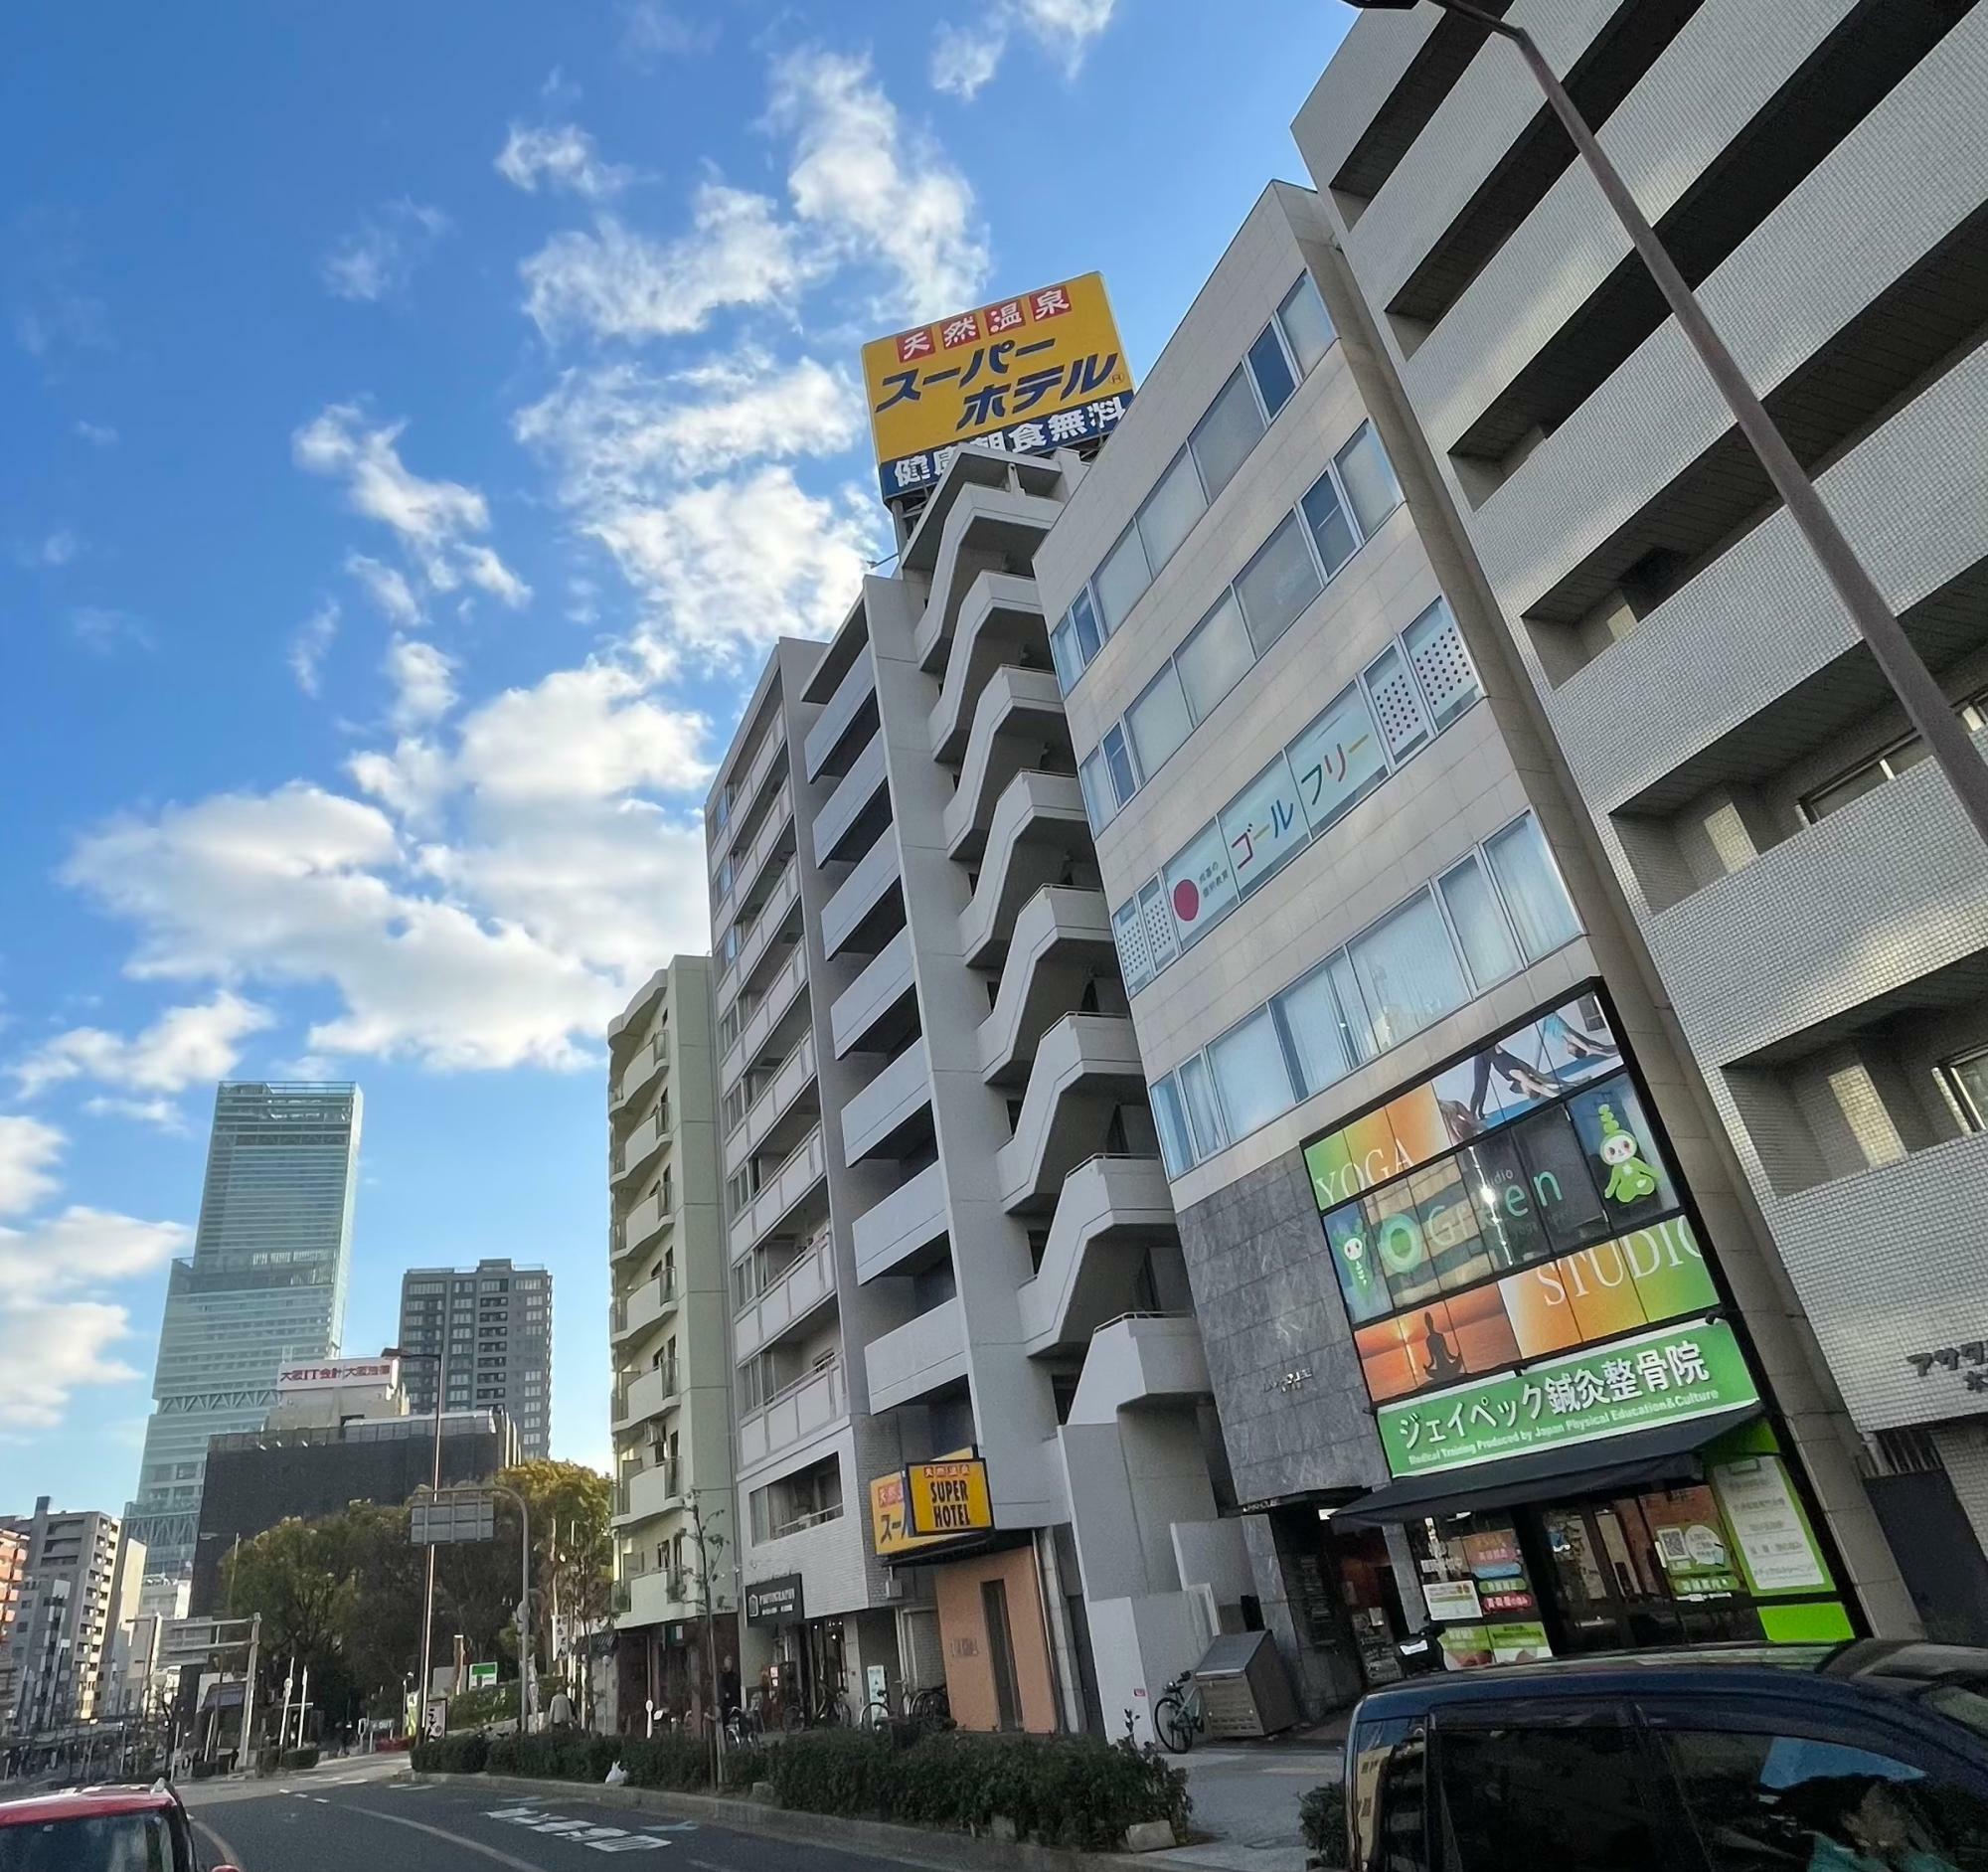 谷町筋沿いにあるスーパーホテル大阪・天王寺。「天然温泉」「健康朝食無料」の黄色い看板は目立っていた